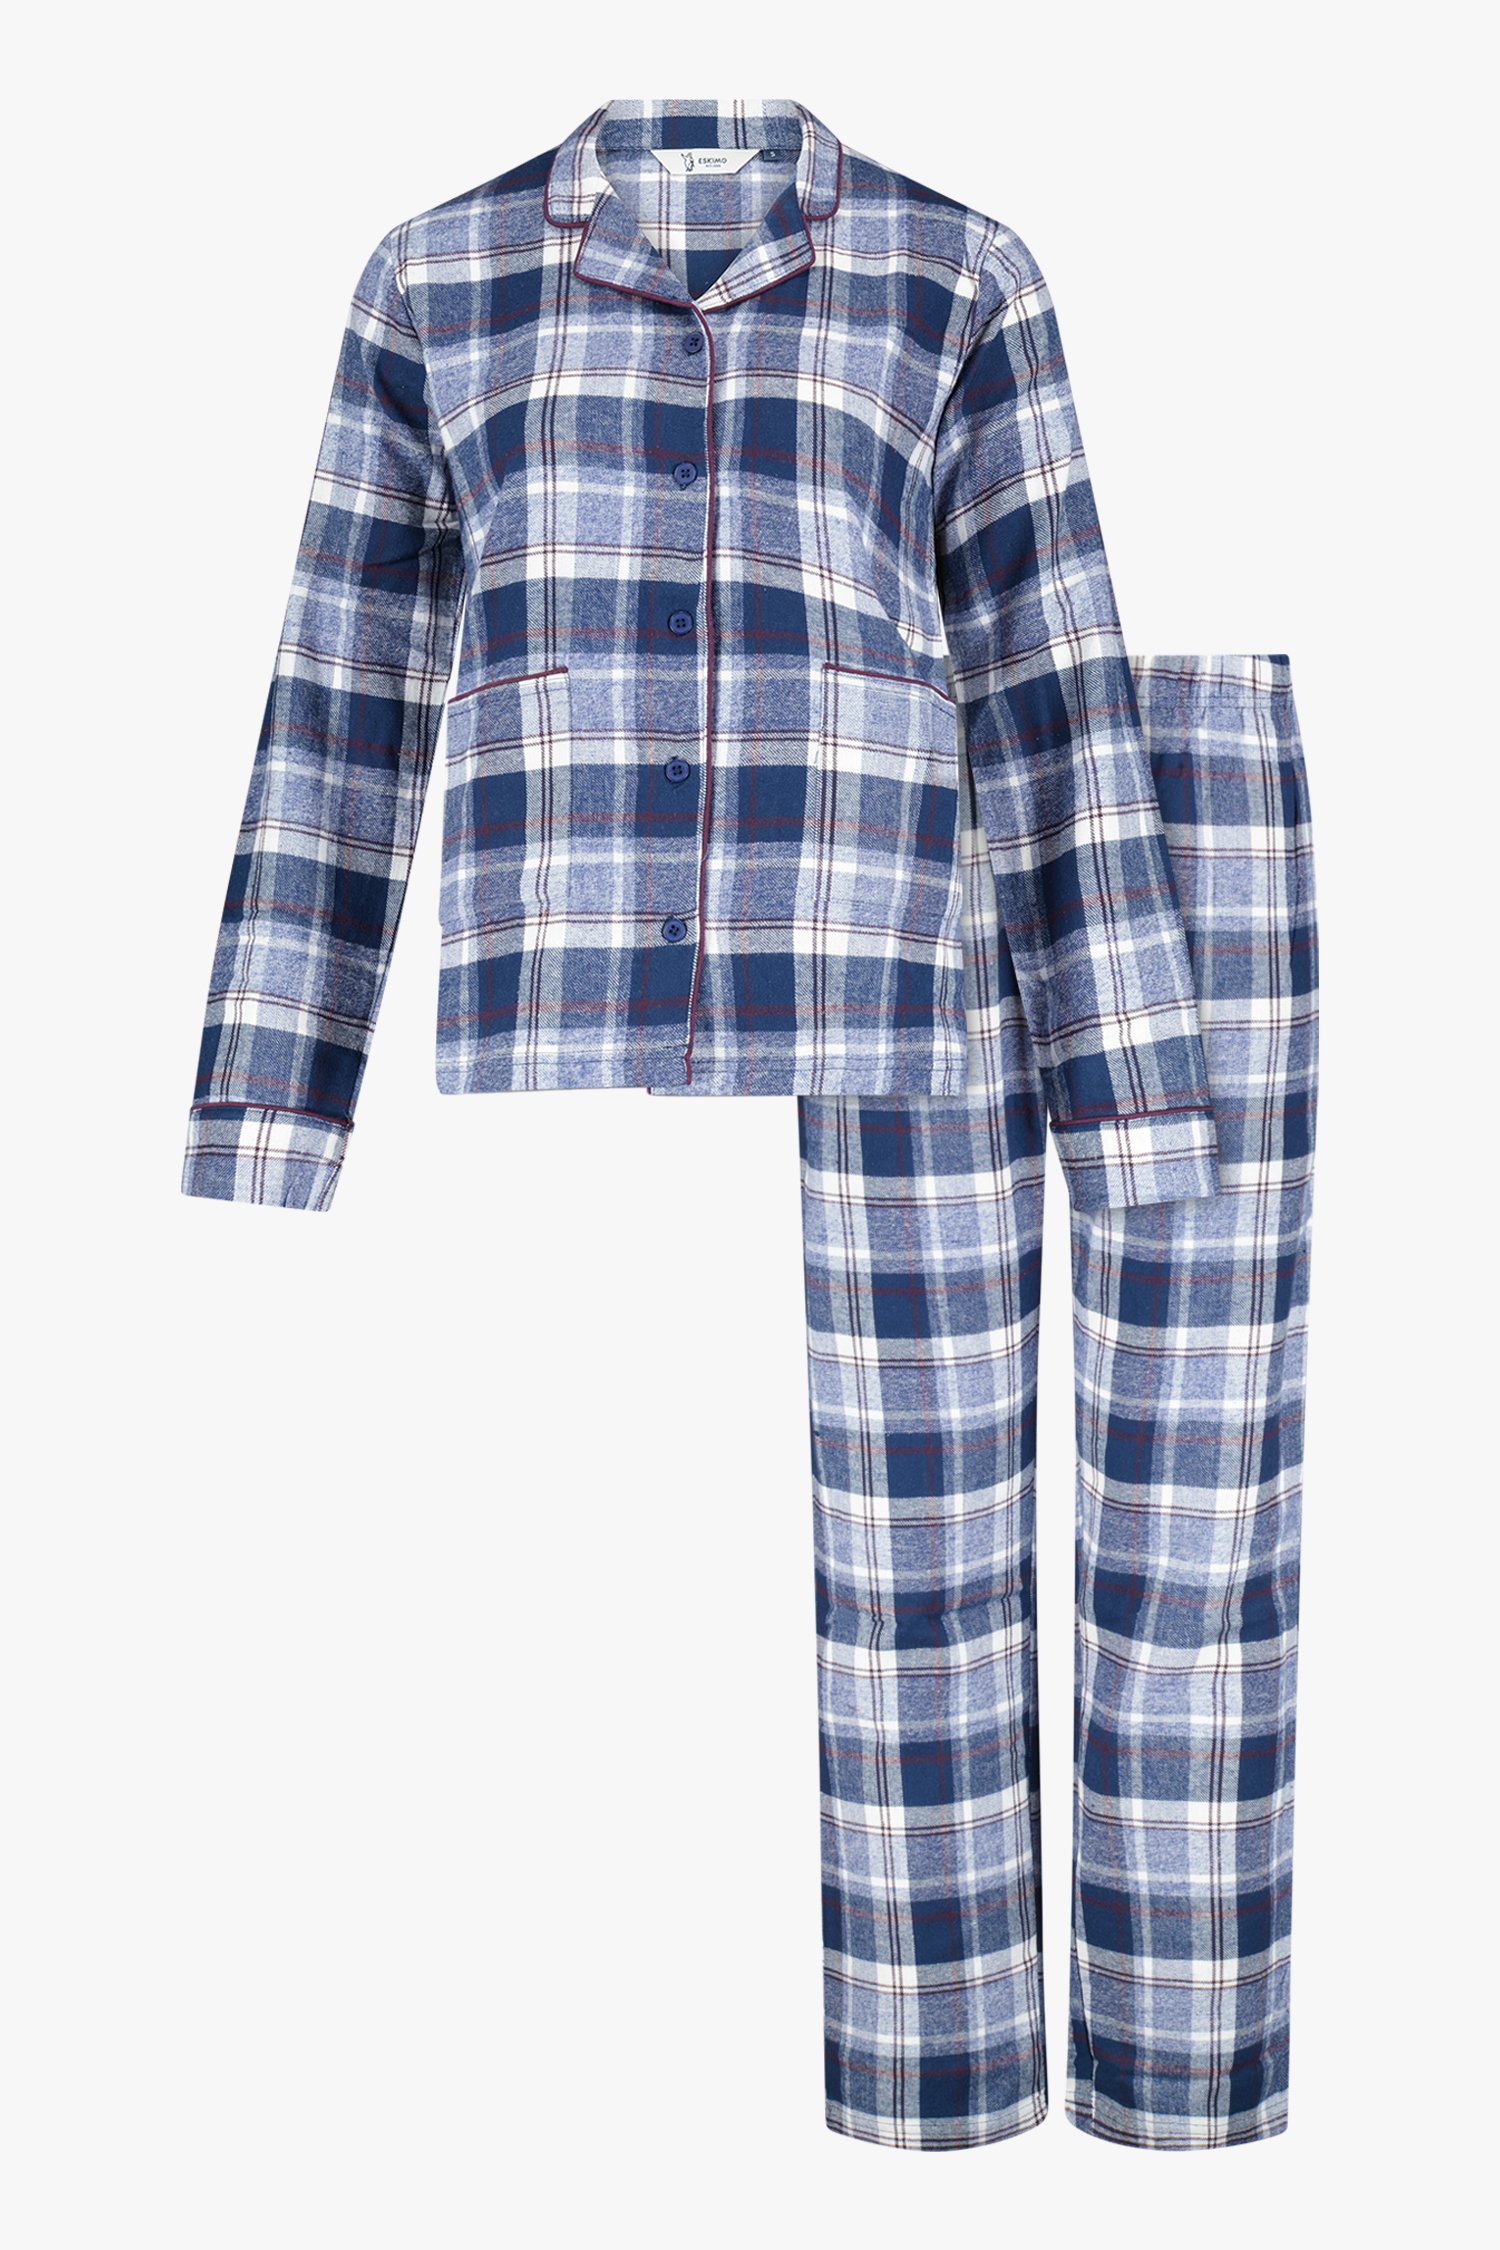 Blauwe geruite pyjama van Eskimo voor Dames